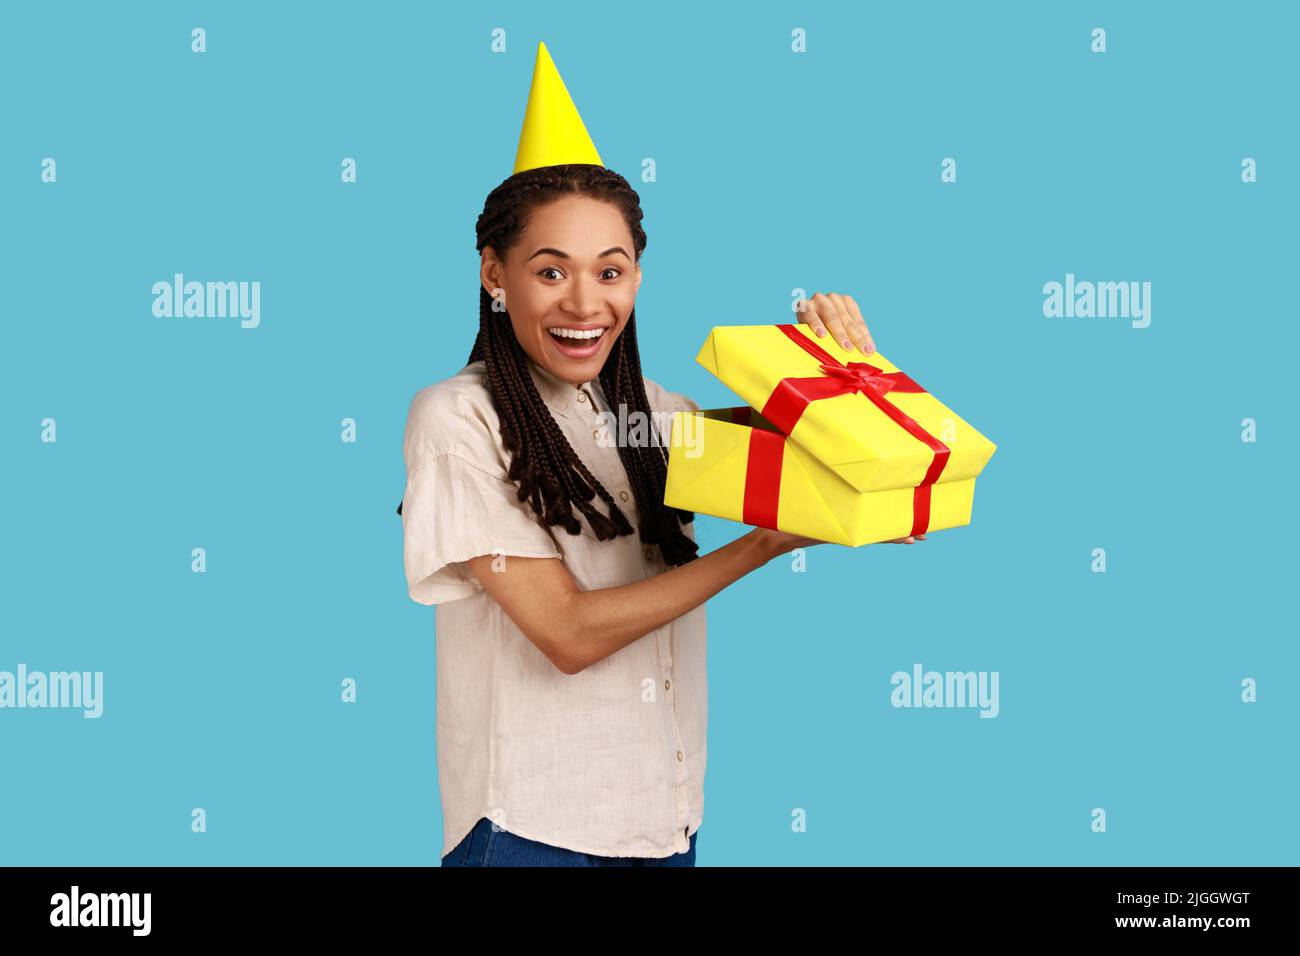 Porträt einer glücklichen, staunenden Frau in gelbem Partykegel, die in die Geschenkbox schaut, das Geschenk öffnet und mit Glück die Kamera anschaut, das weiße Hemd trägt. Innenaufnahme des Studios isoliert auf blauem Hintergrund. Stockfoto